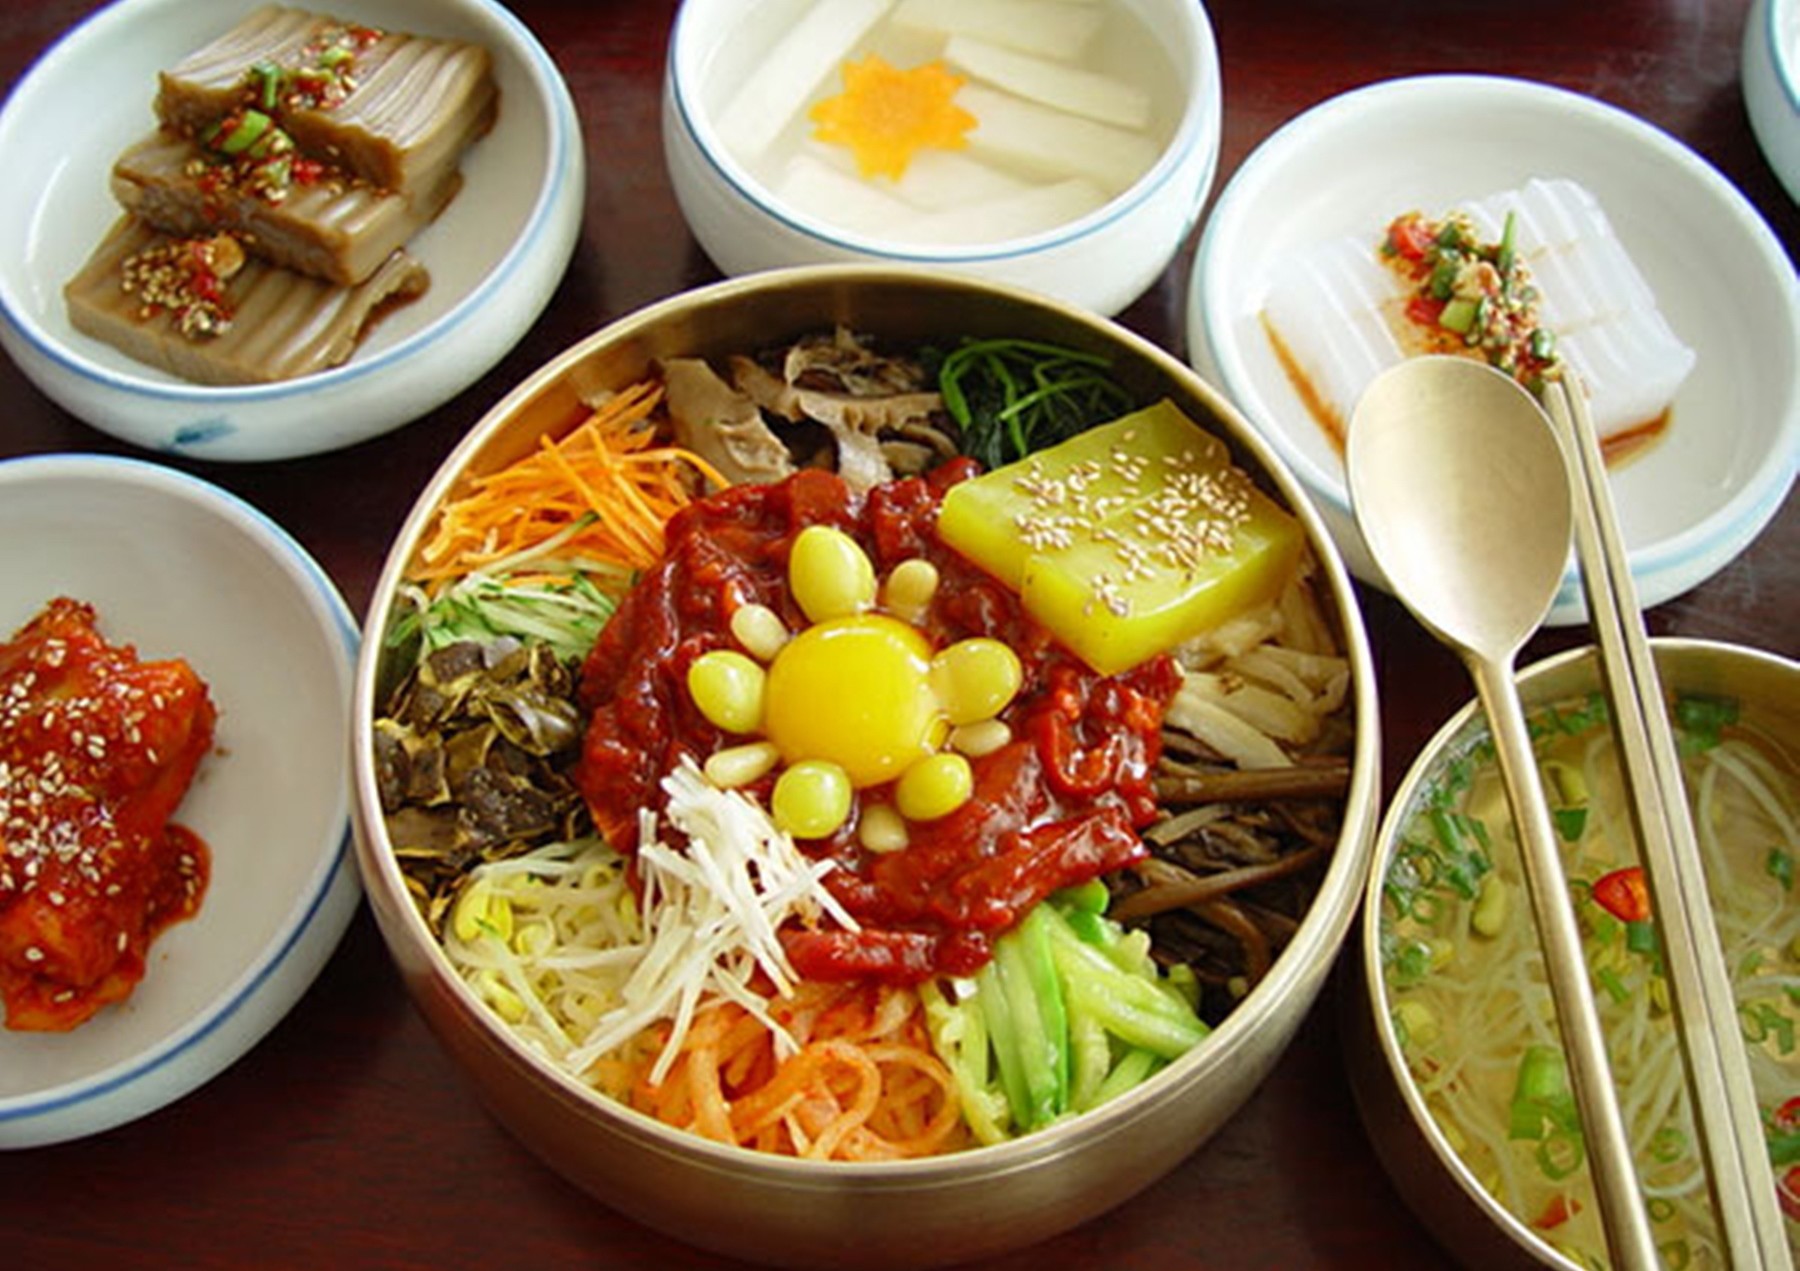 Say sưa trong tinh hoa ẩm thực xứ sở Kim Chi- Hàn Quốc.